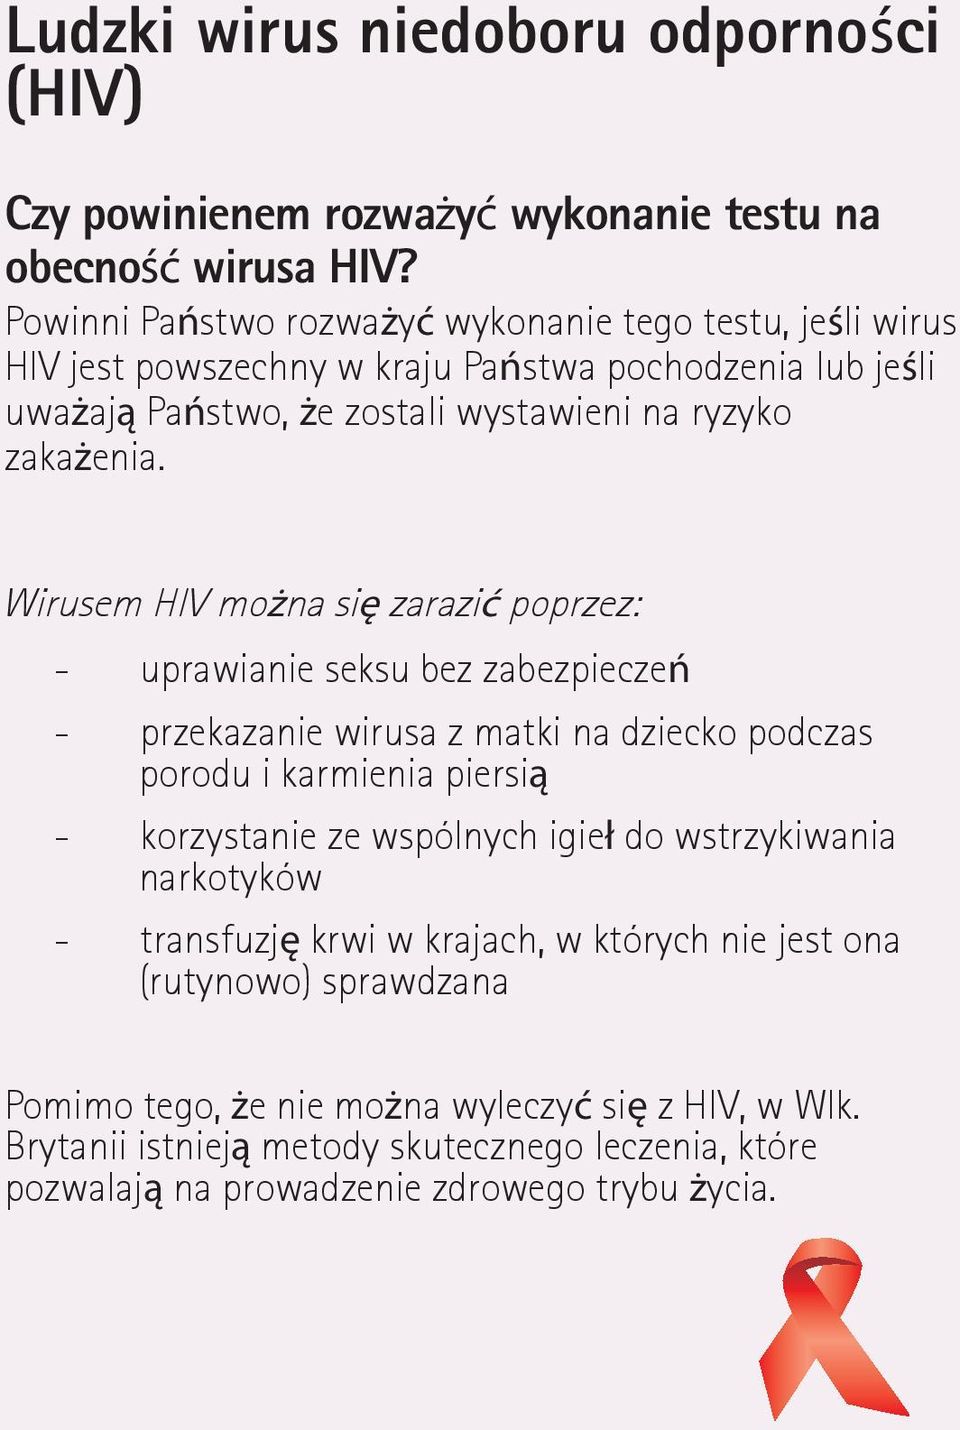 Wirusem HIV można się zarazić poprzez: - uprawianie seksu bez zabezpieczeń - przekazanie wirusa z matki na dziecko podczas porodu i karmienia piersią - korzystanie ze wspólnych